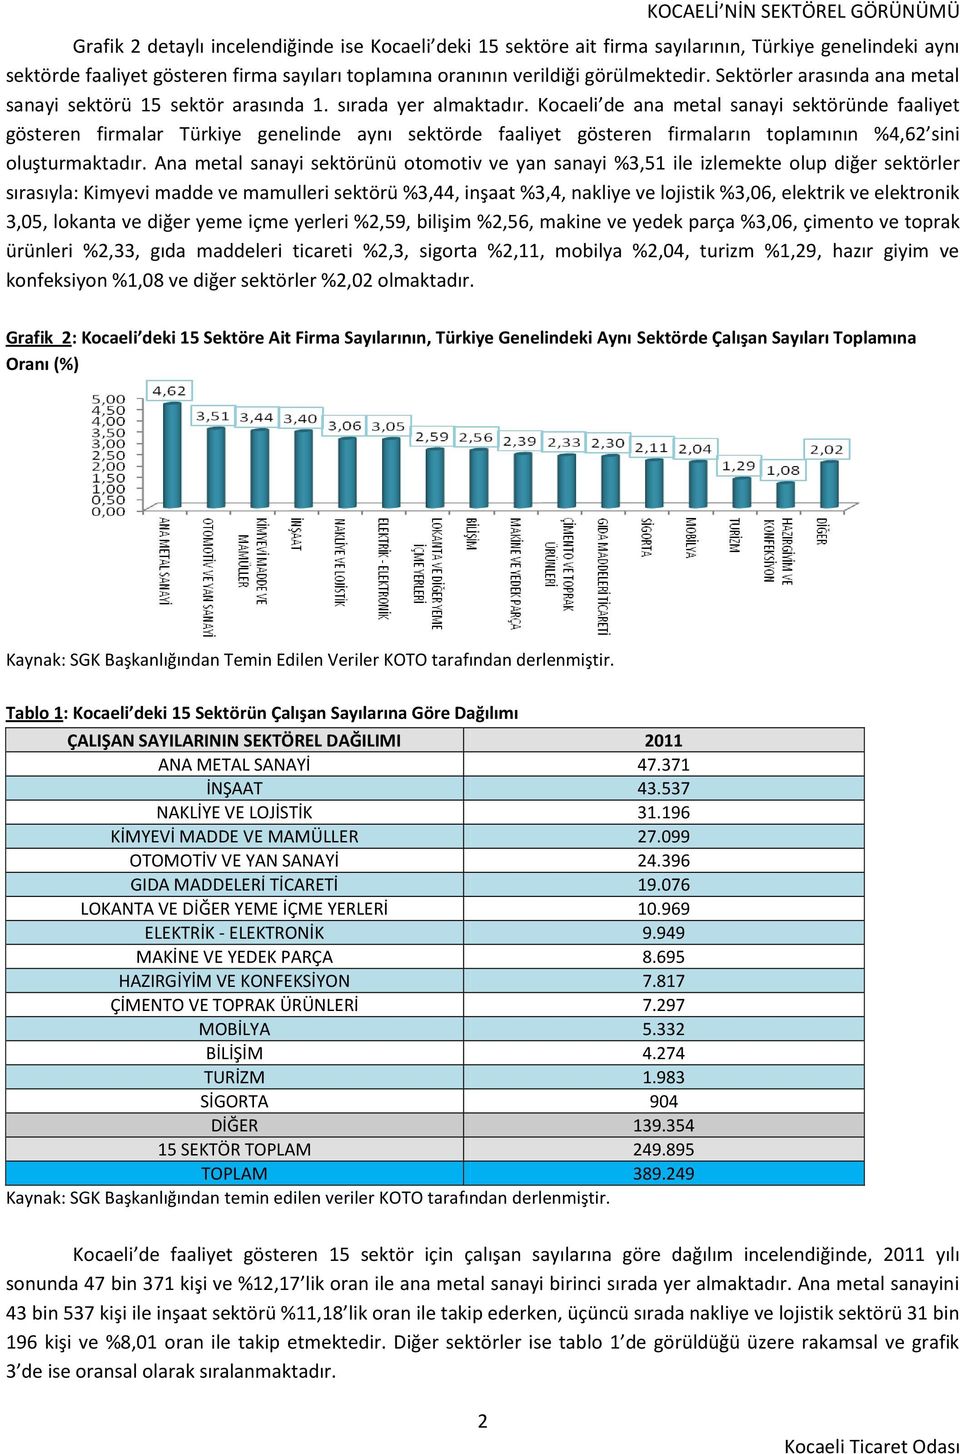 Kocaeli de ana metal sanayi sektöründe faaliyet gösteren firmalar Türkiye genelinde aynı sektörde faaliyet gösteren firmaların toplamının %4,62 sini oluşturmaktadır.